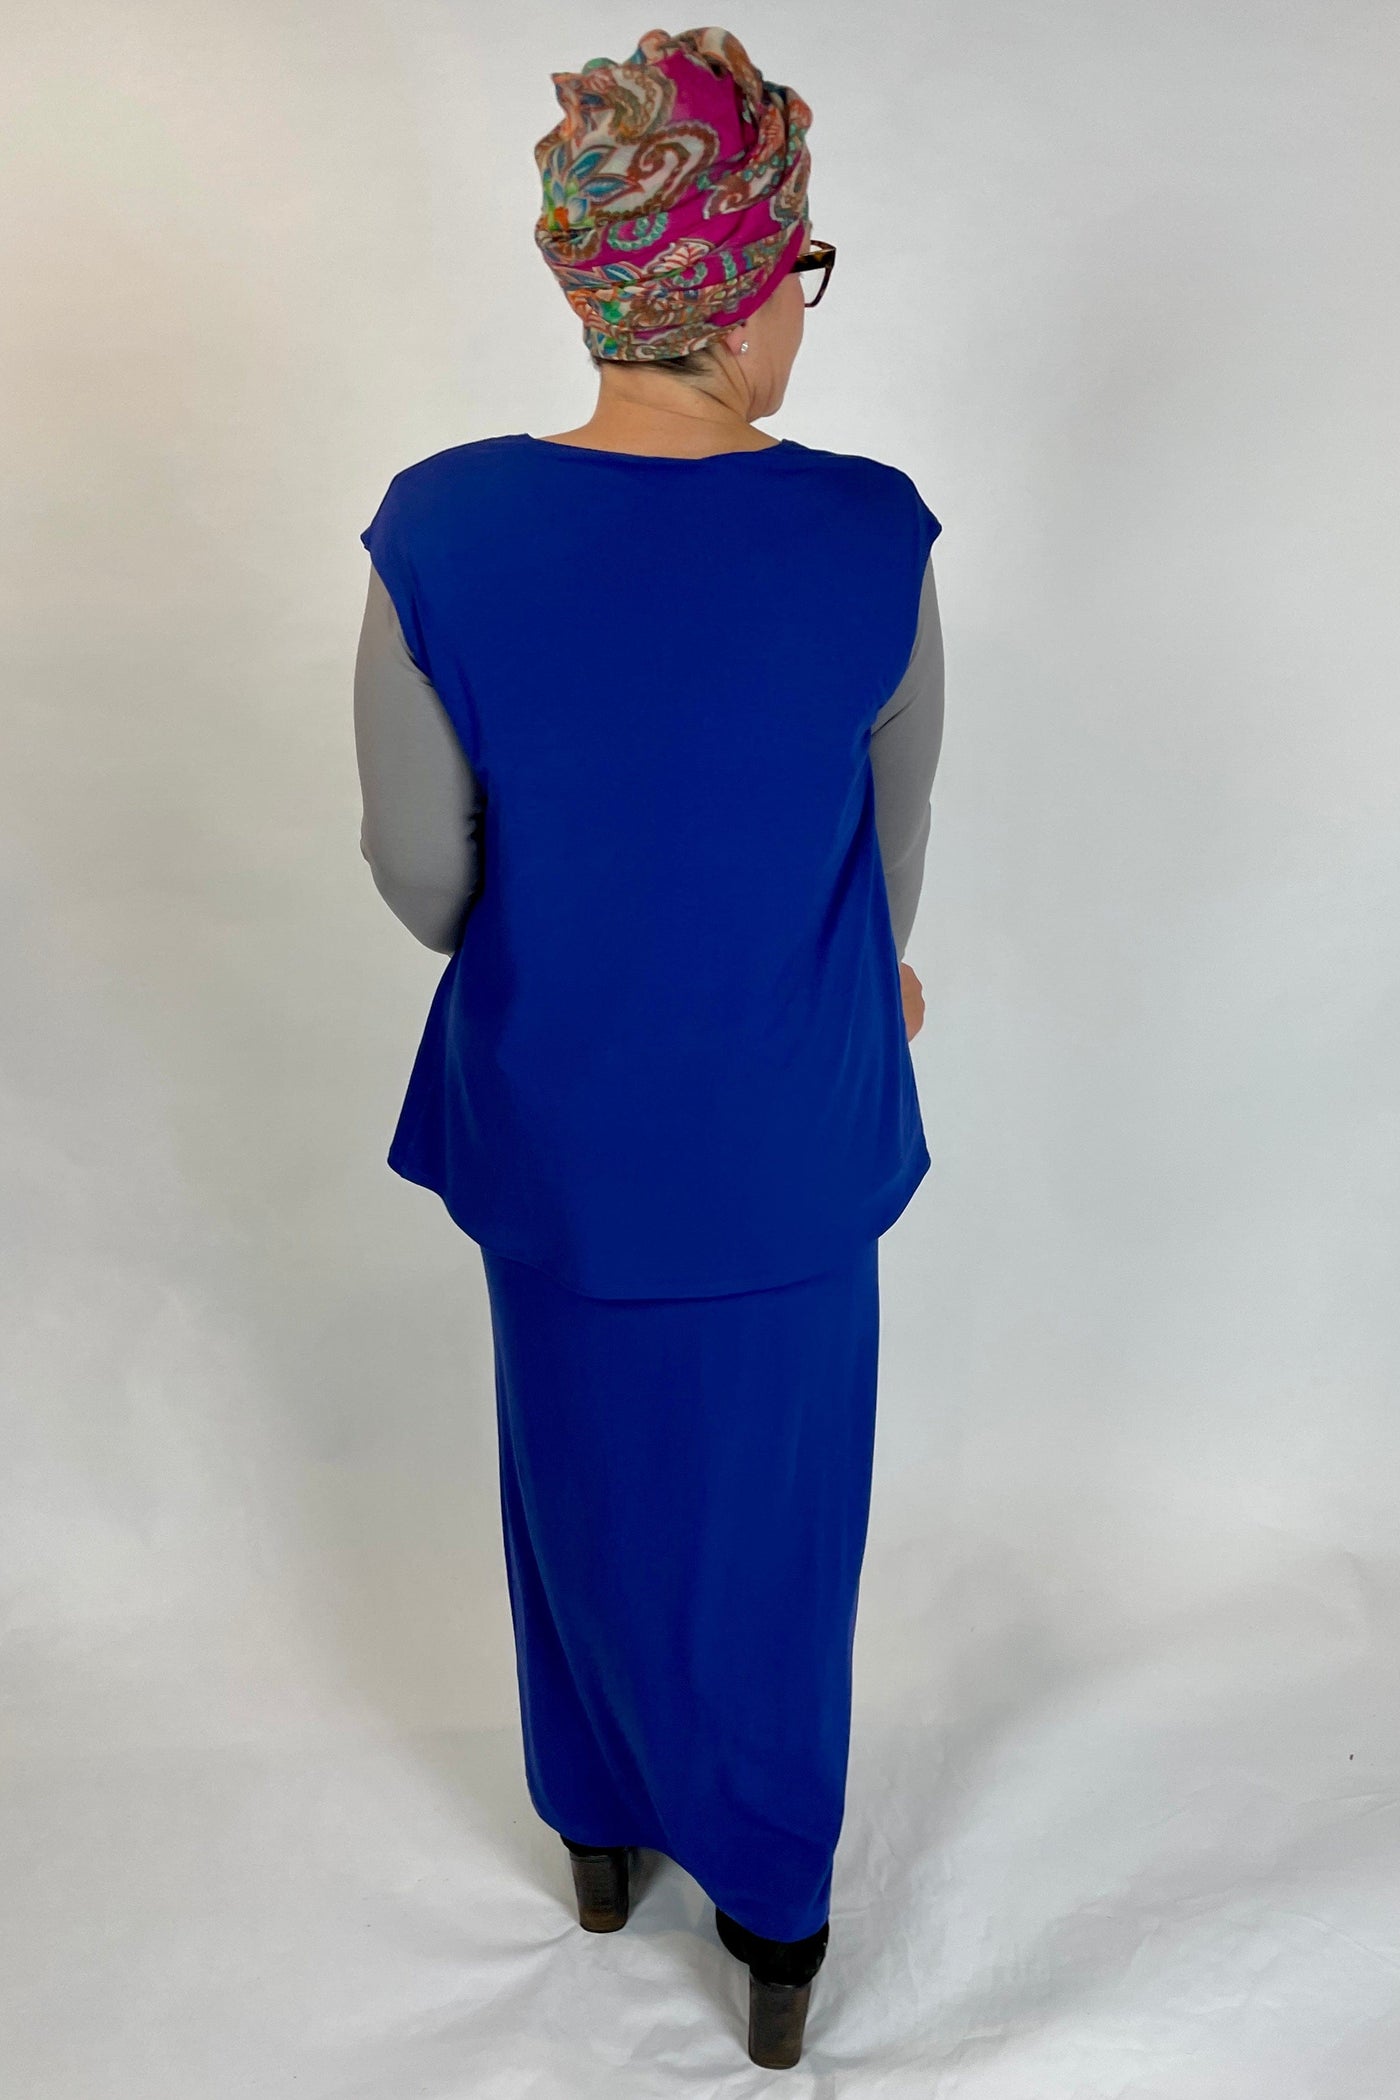 WEYRE Skirt maxi skirt iris blue